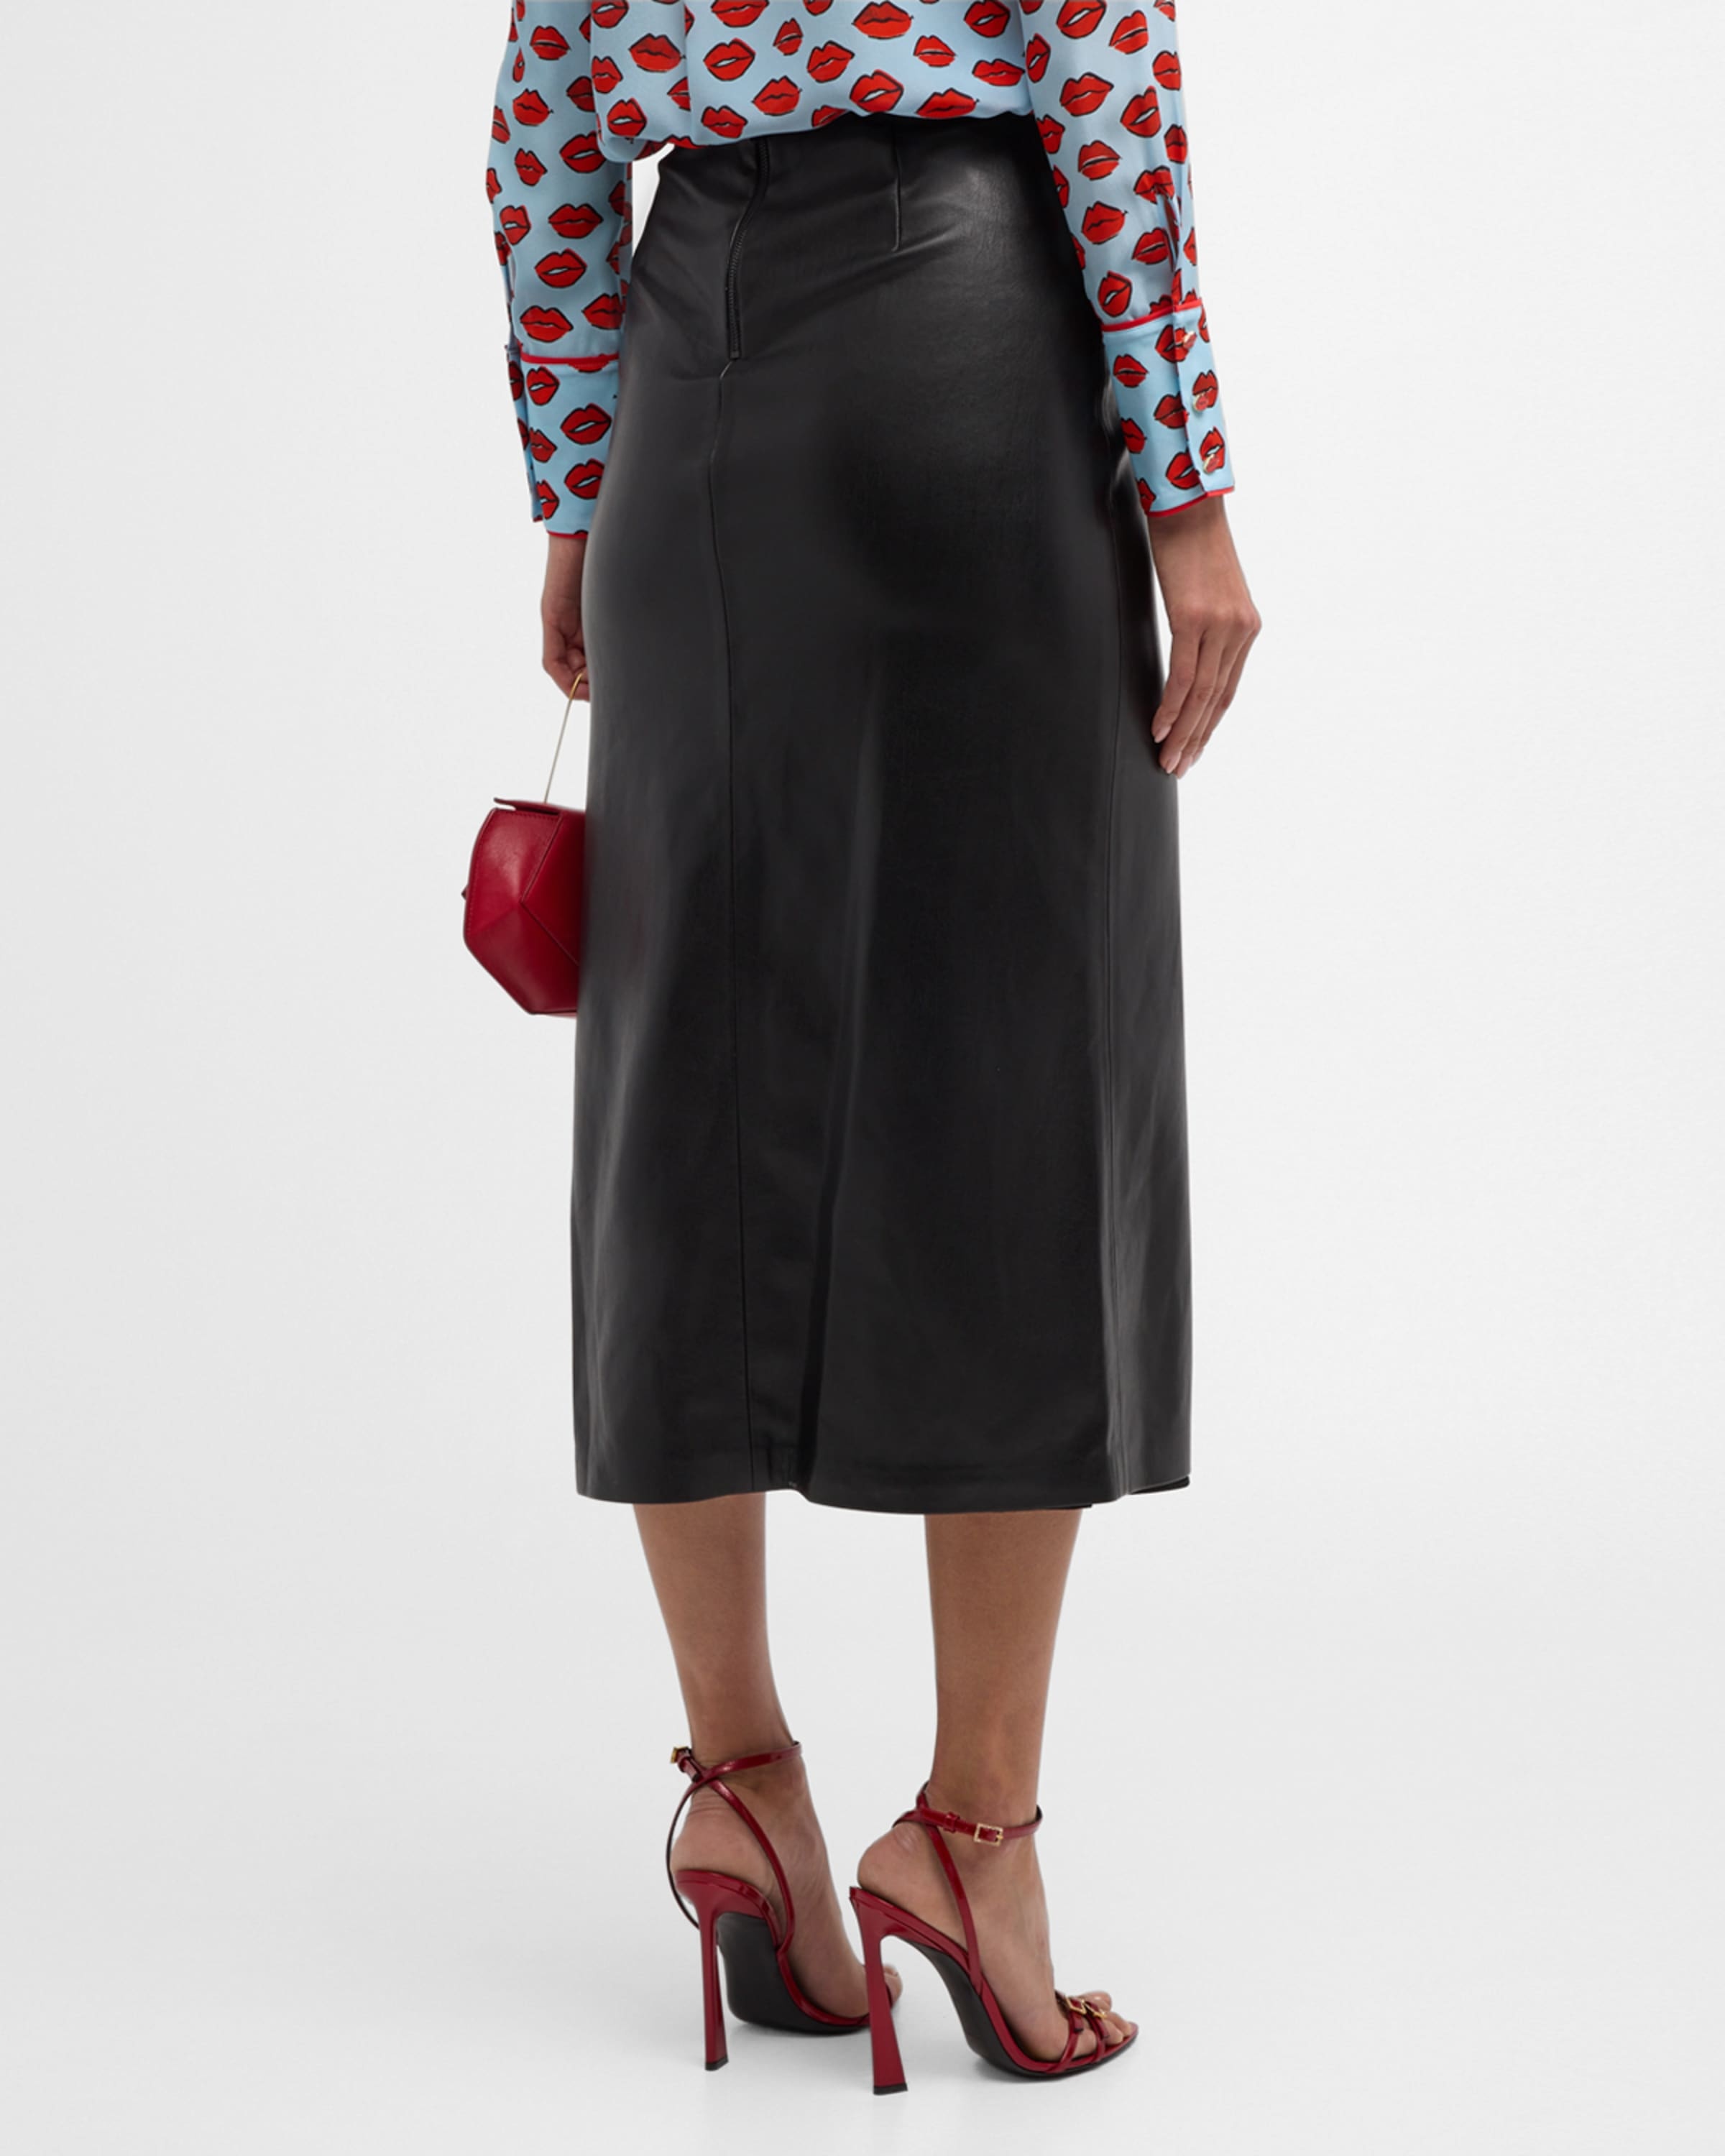 Maeve Vegan Leather Slip Skirt - 4